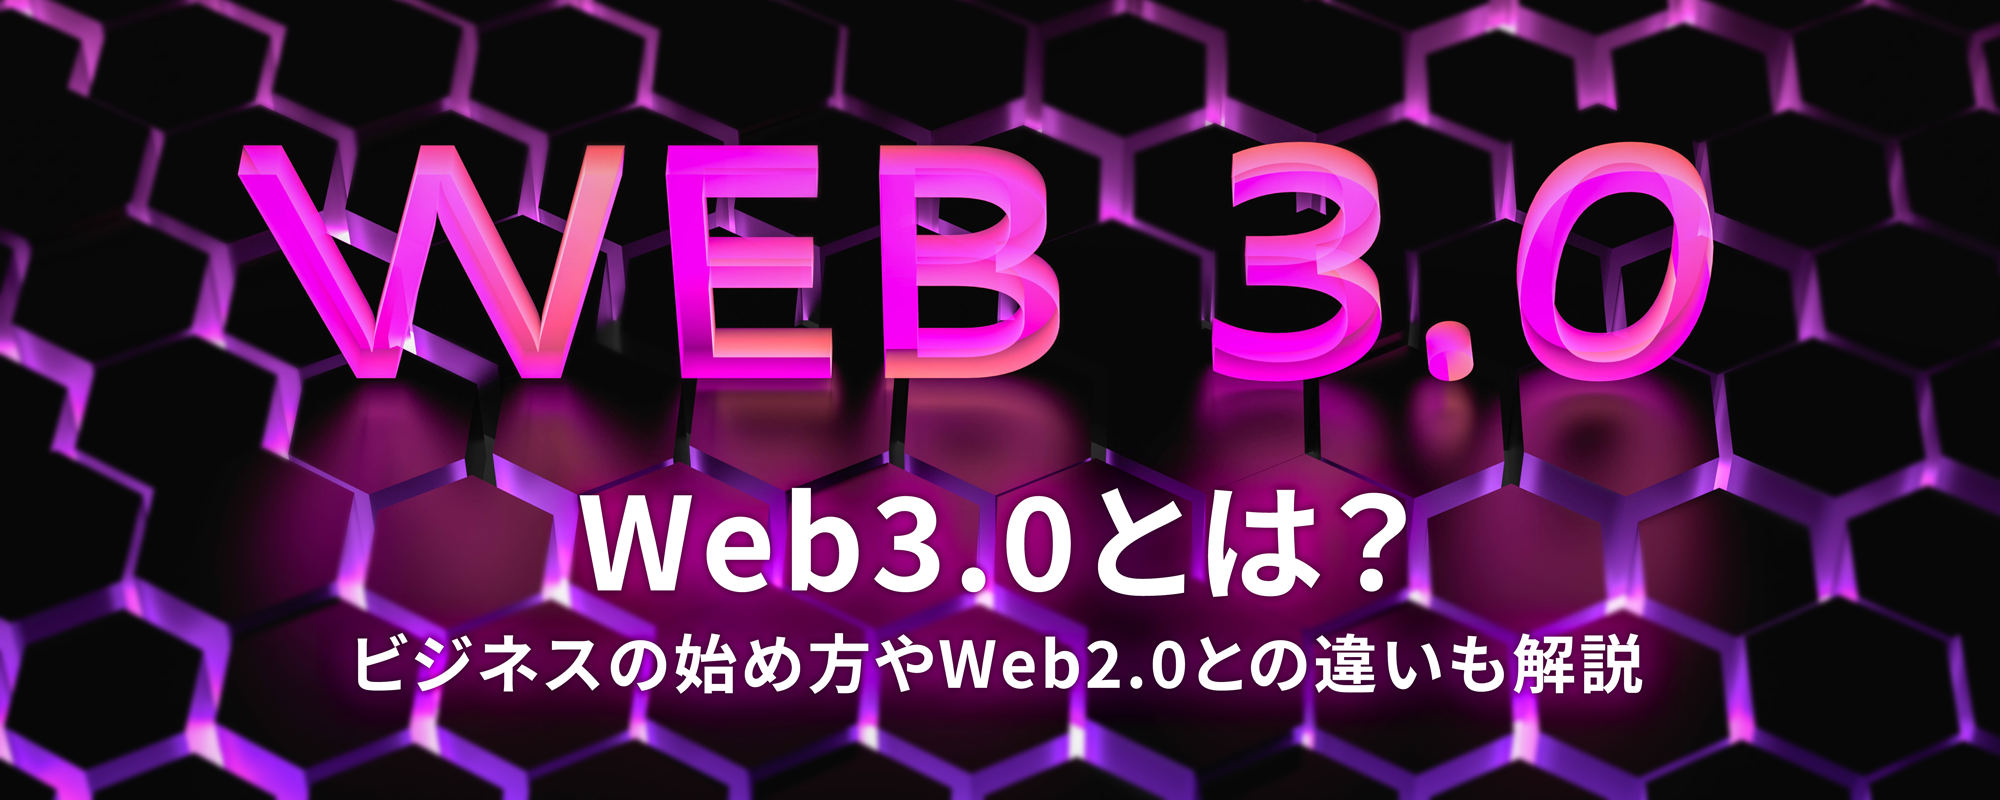 Web3.0とは？ビジネスの始め方やWeb2.0との違いも解説